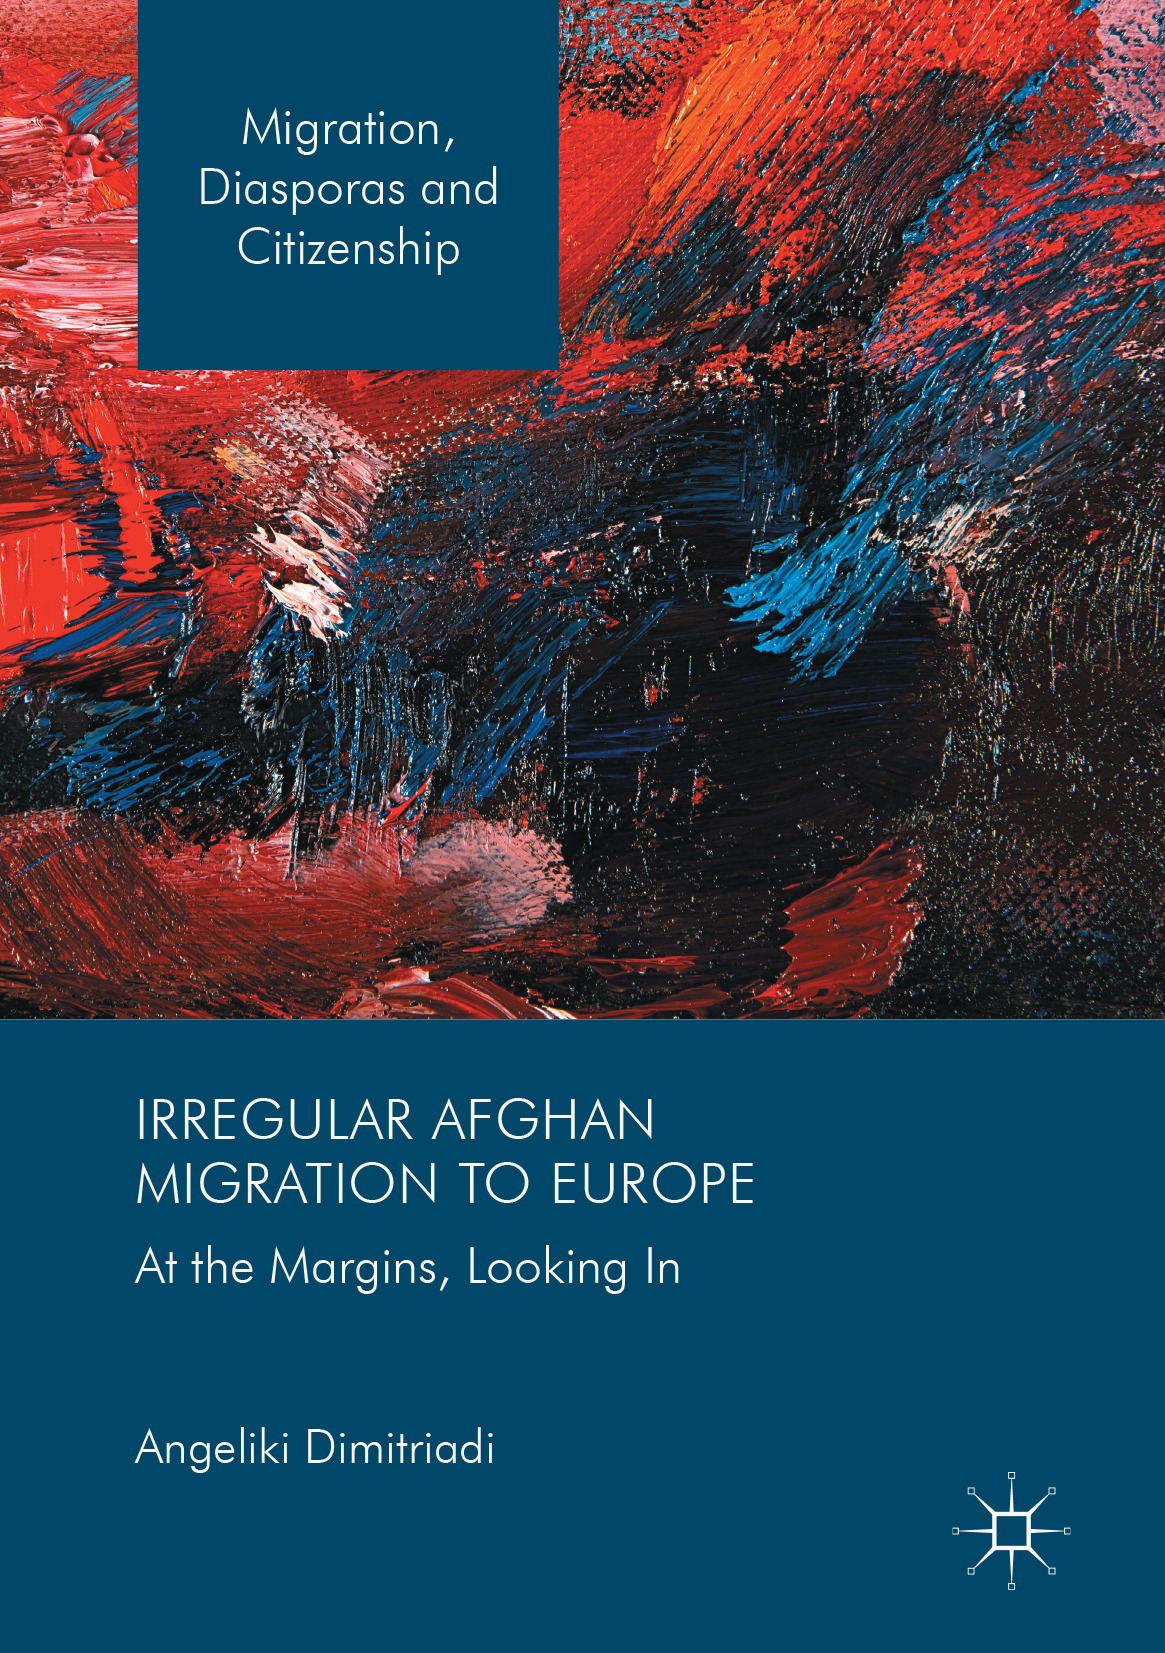 Dimitriadi, Angeliki - Irregular Afghan Migration to Europe, ebook